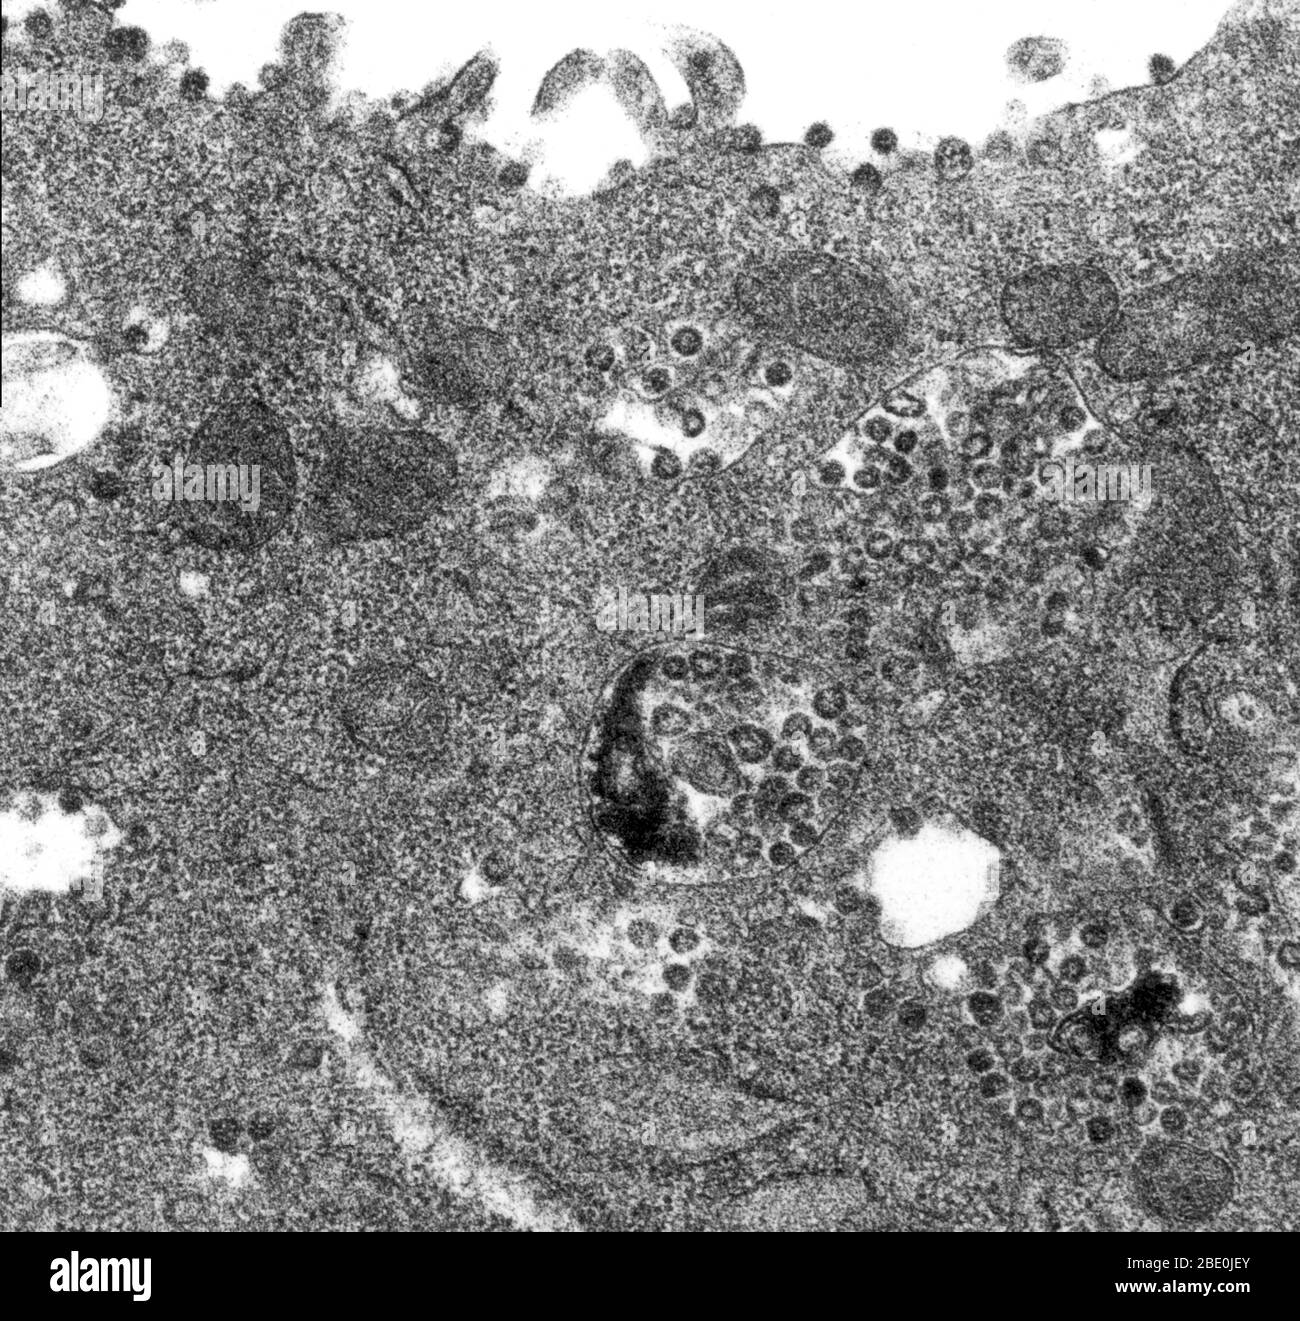 La micrografia elettronica a trasmissione (TEM) di una sezione sottile TEM di una cellula Vero E6 infettata, rivelando la presenza di particelle di coronavirus. Si noti che le particelle virali sono contenute nei vacuoli legati alla membrana citoplasmatica della cellula, e cisternae del reticolo endoplasmatico grezzo. Le cellule vero sono una linea di cellule usate in colture cellulari. I coronavirus sono specie di virus appartenenti alla sottofamiglia Coronavirinae della famiglia Coronaviridae, nell'ordine Nidovirales. I coronavirus sono virus con involucro con un genoma di RNA a singolo filamento e senso positivo e con un nucleocapside di simm elicoidale Foto Stock